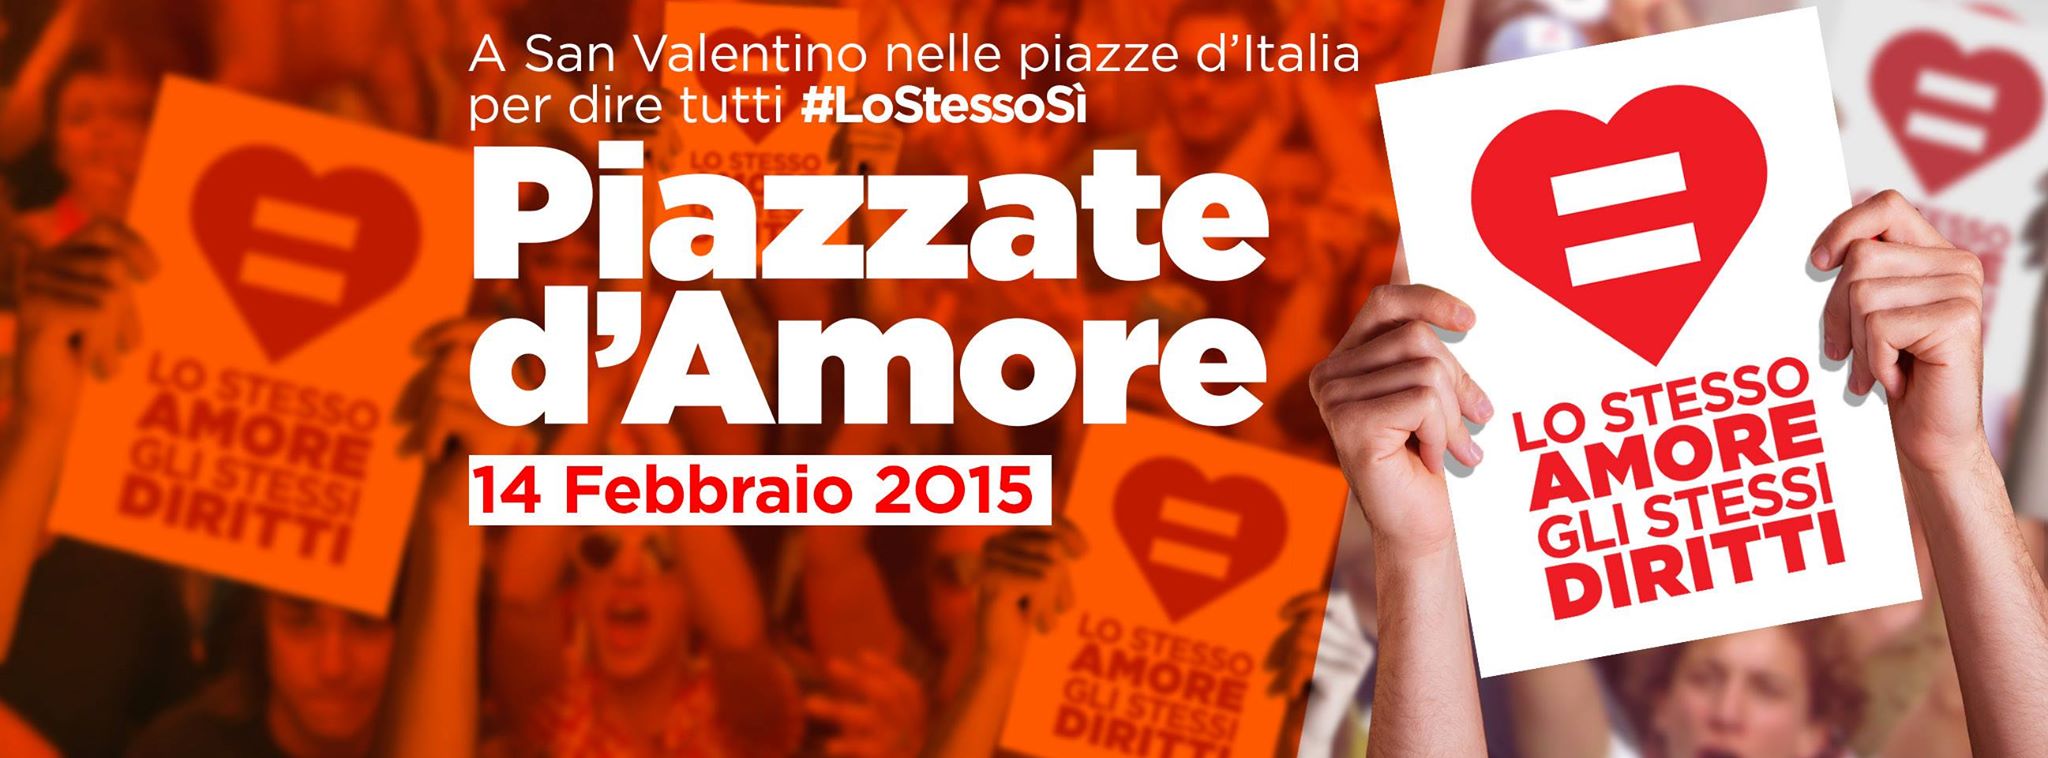 “Piazzate d’Amore”: flashmob per la salvaguardia dei diritti di tutti a San Valentino